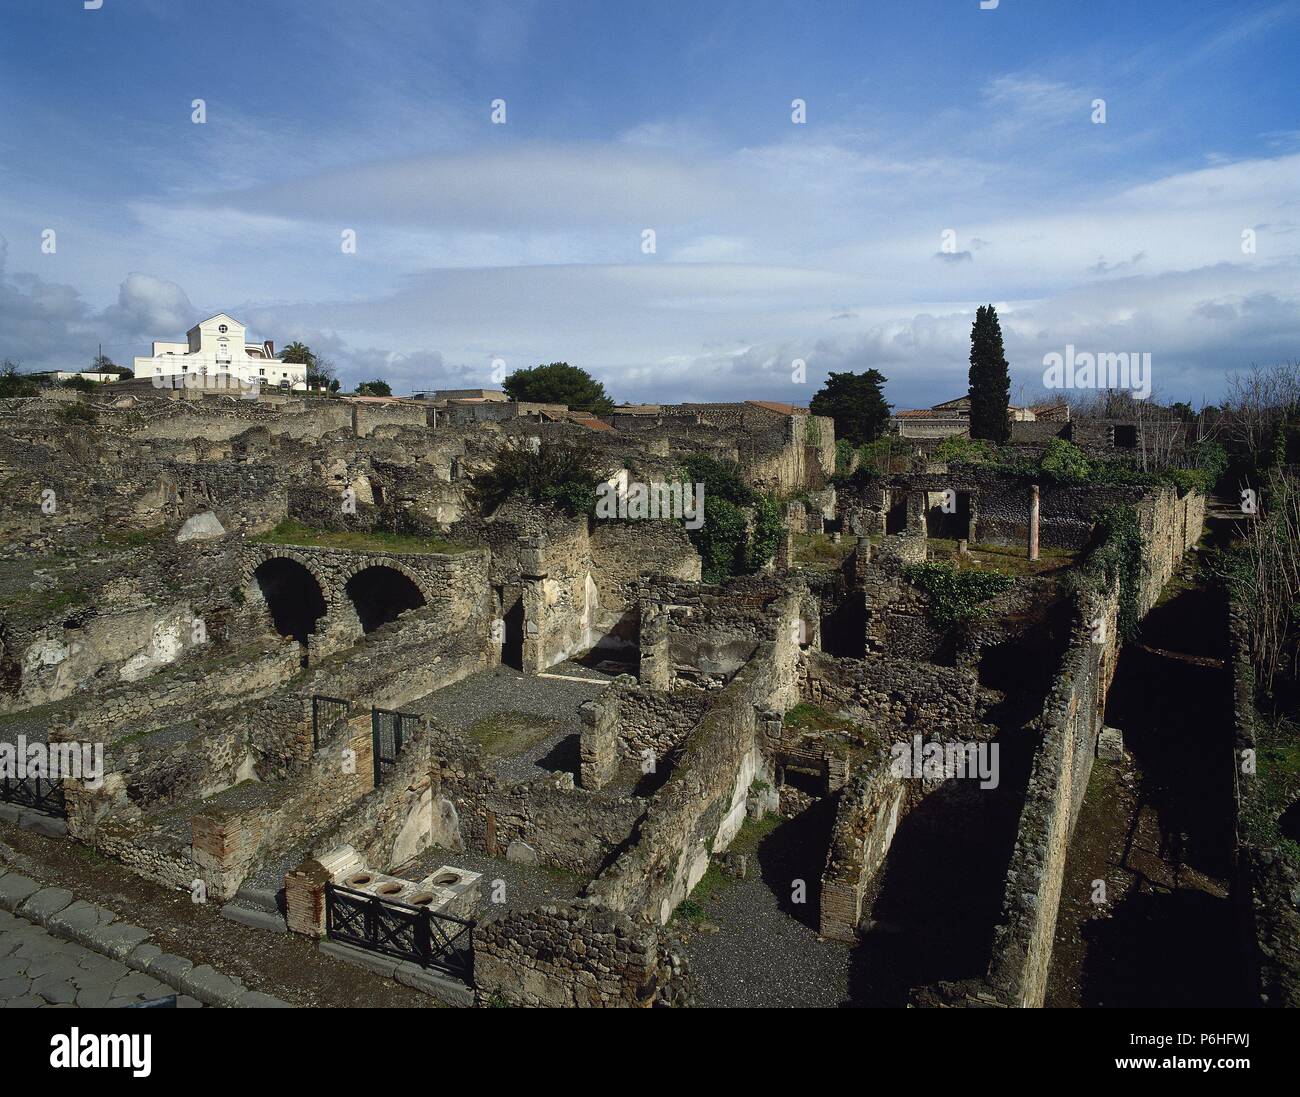 ARTE ROMANO. ITALIA. HERCULANO. Vista general de las ruinas de la antigua ciudad romana que en el año 79 d. C. fué cubierta por una capa de lava de más de 20 m. tras la erupción del Vesubio. La Campania. Stock Photo